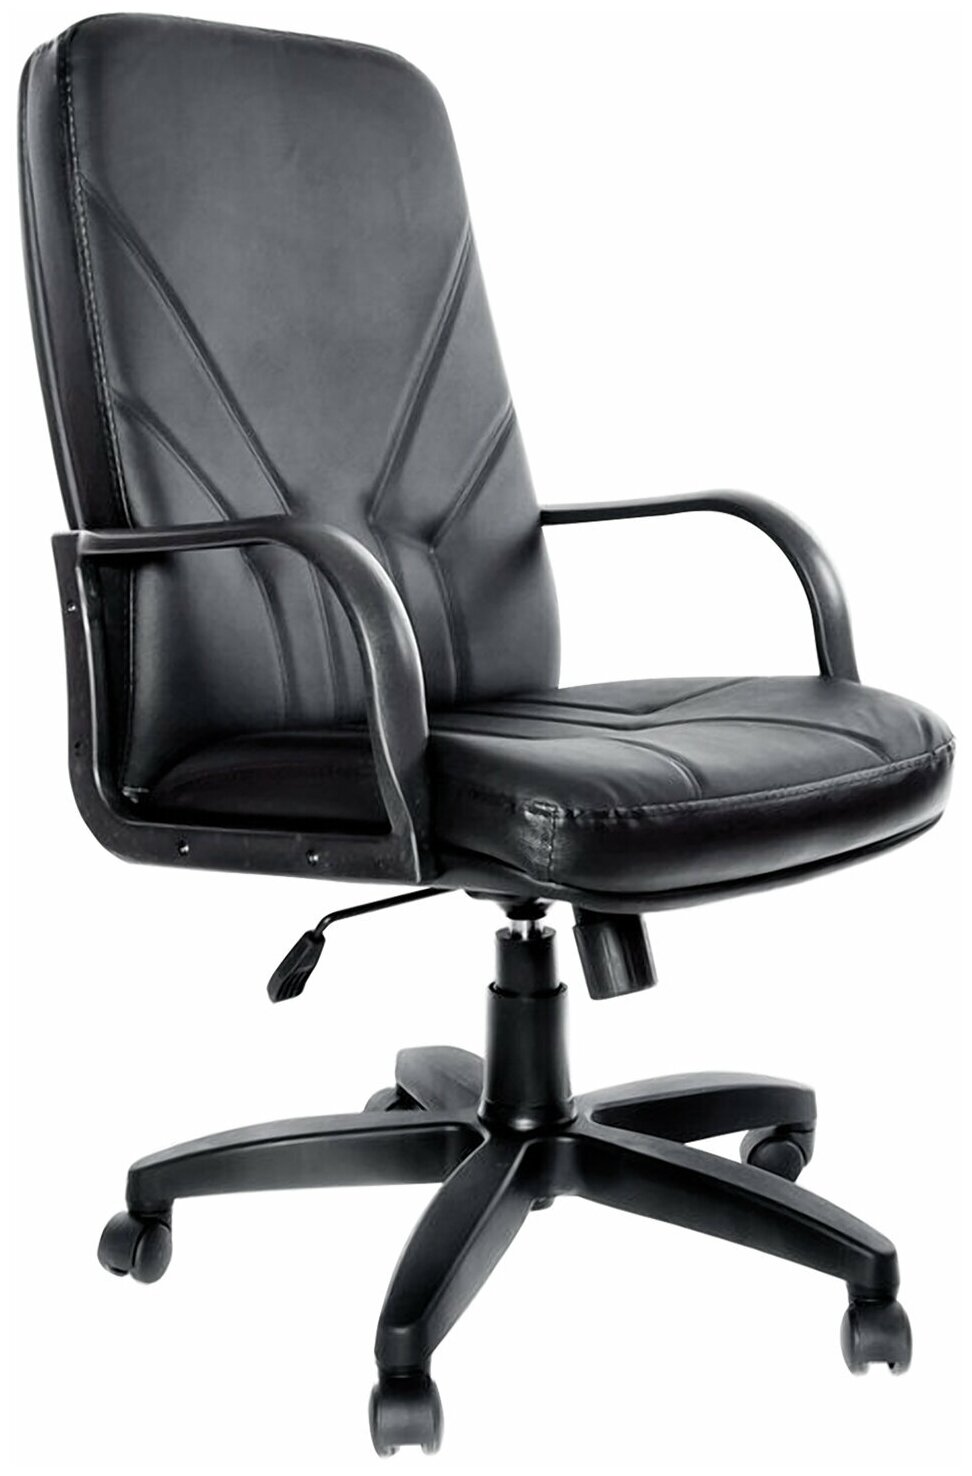 Кресло из натуральной кожи "Менеджер", монолитный каркас, черное - 1 шт.